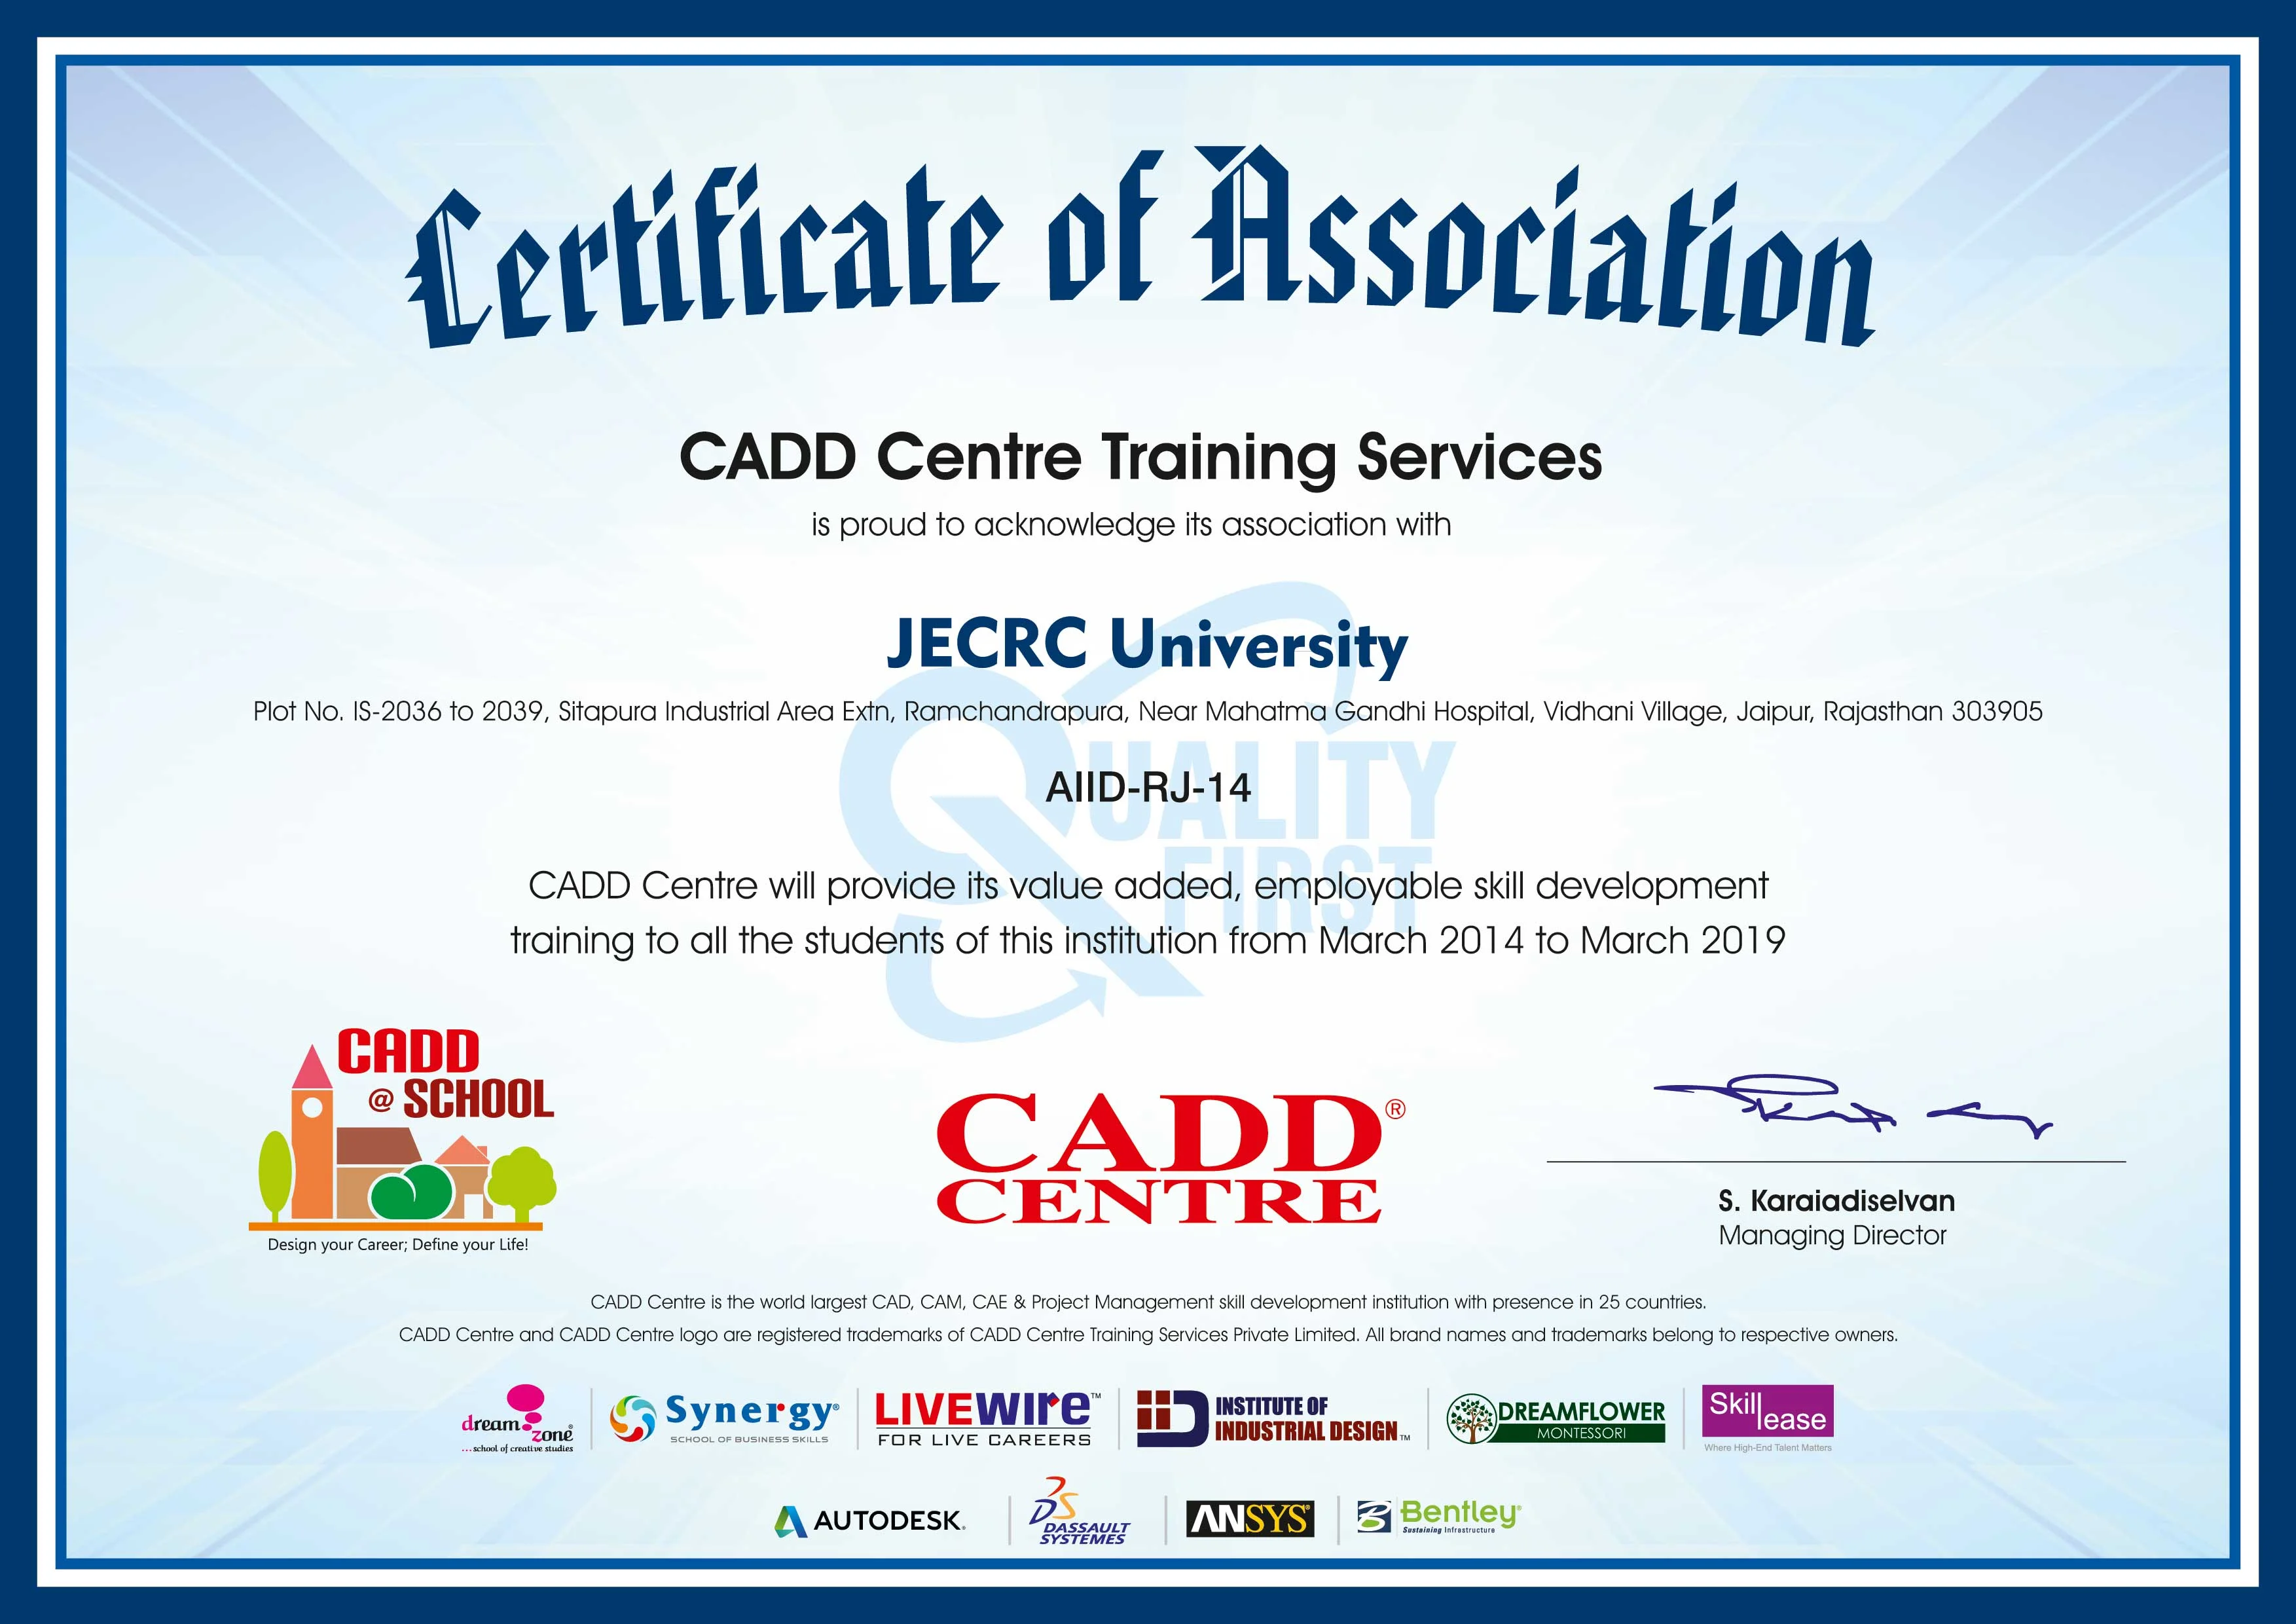 Jecrc_University